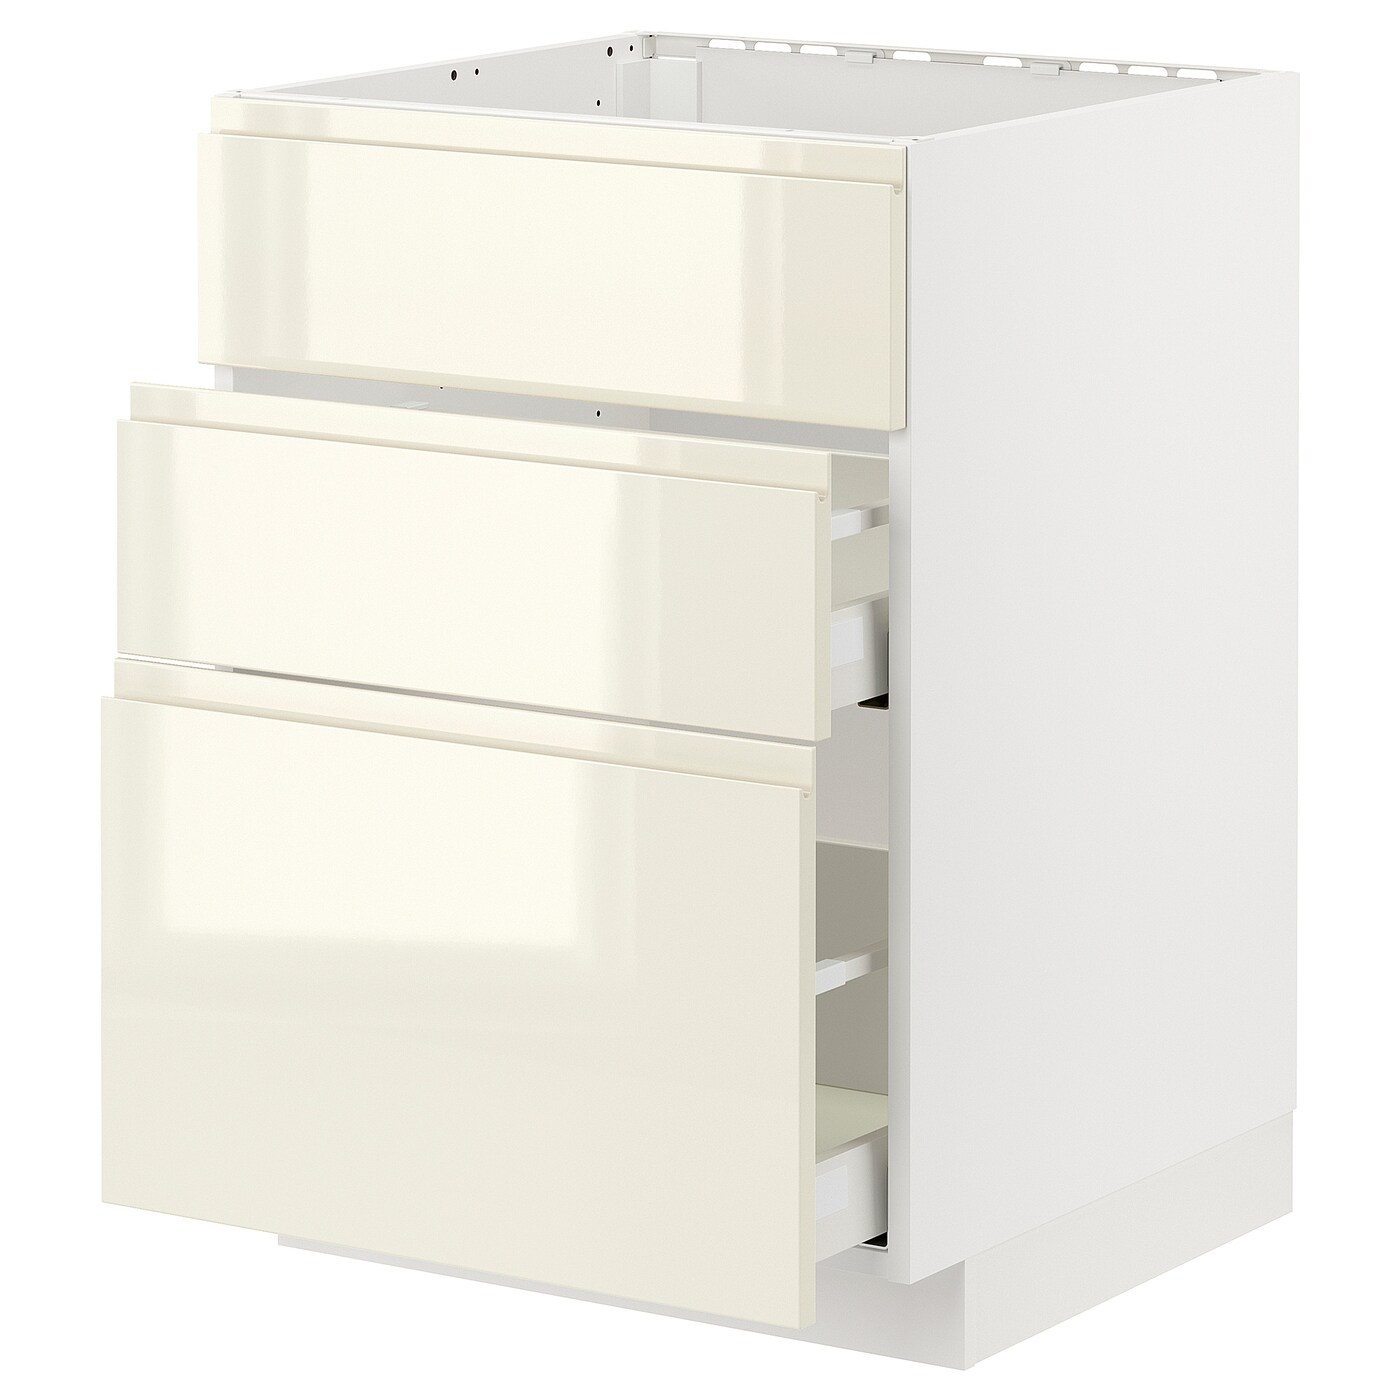 Напольный шкаф - IKEA METOD MAXIMERA, 80x60см, белый, МЕТОД МАКСИМЕРА ИКЕА